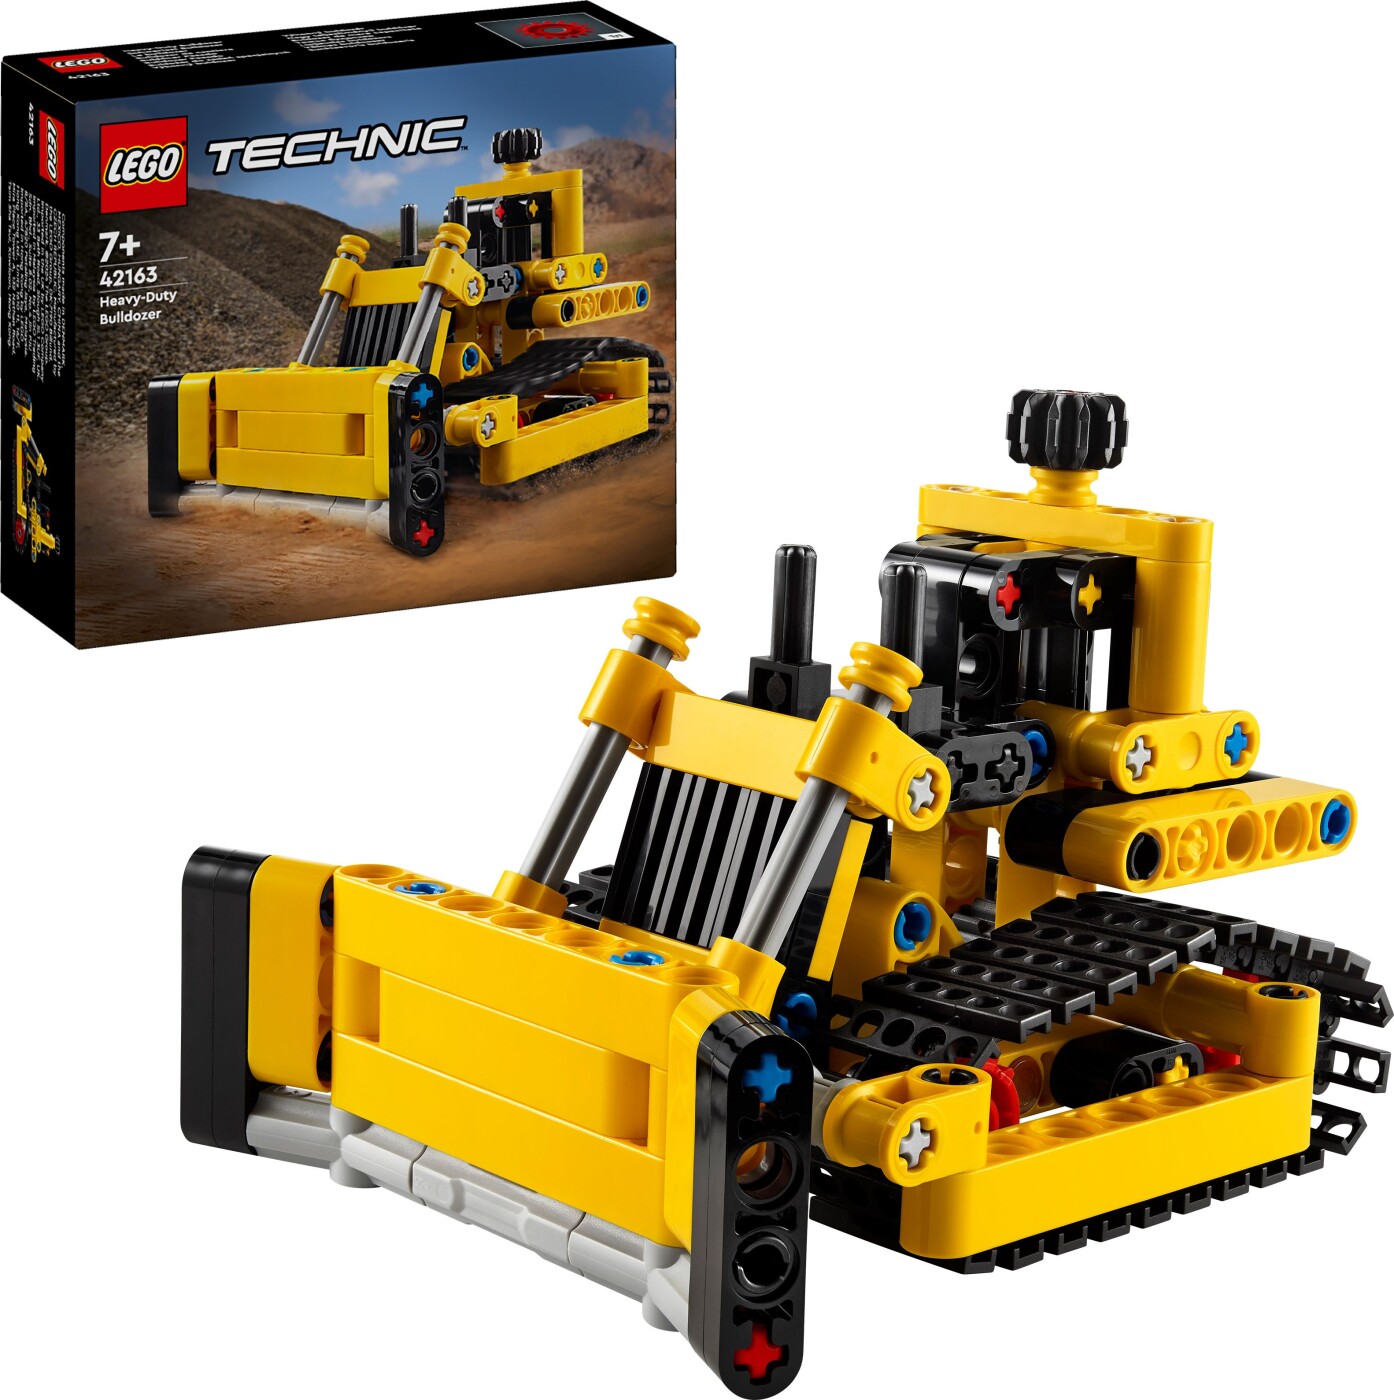 Billede af Lego Technic - Stor Bulldozer - 42163 hos Gucca.dk